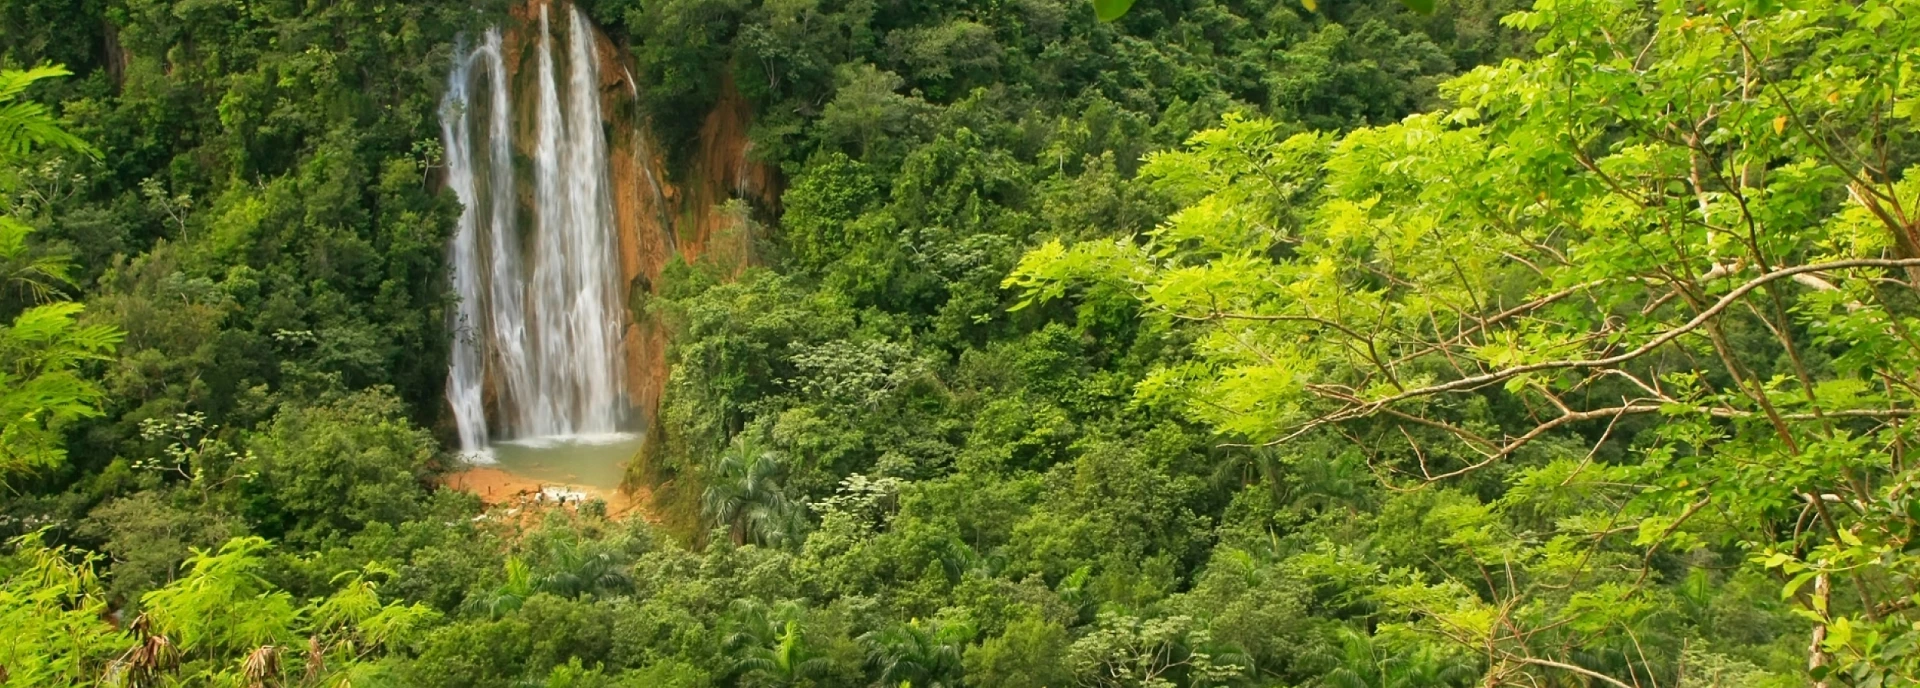 Park Narodowy Los Haitises: podróż przez ekosystemy